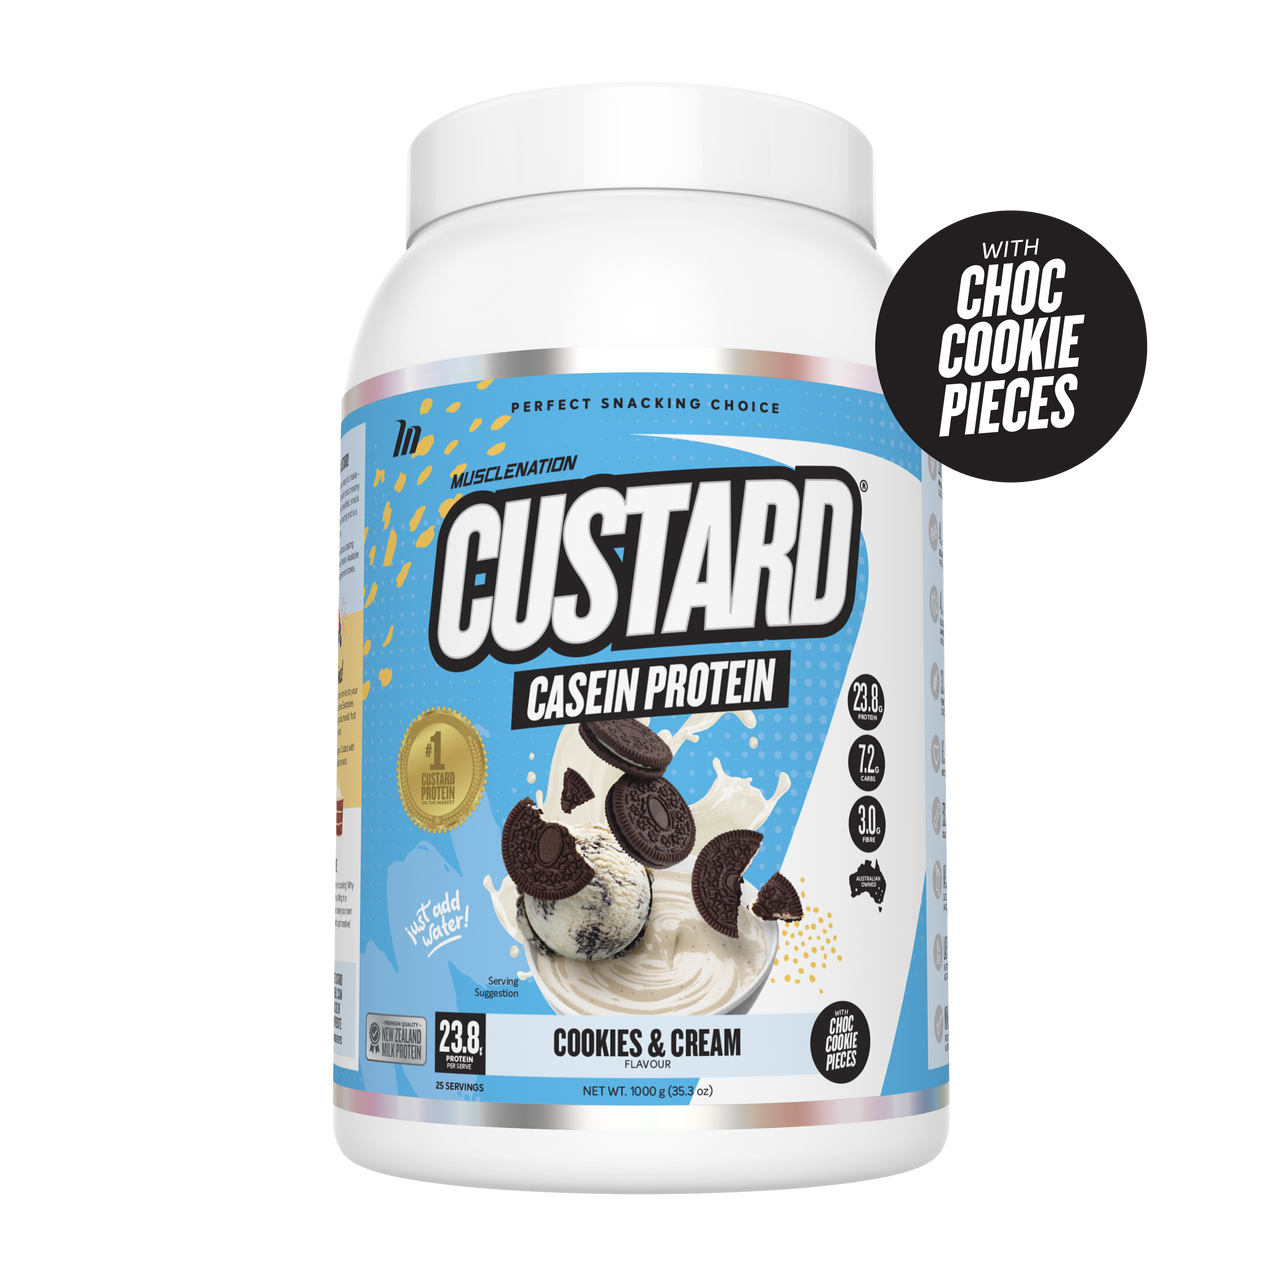 Muscle Nation Custard Casein Protein - Super Nutrition